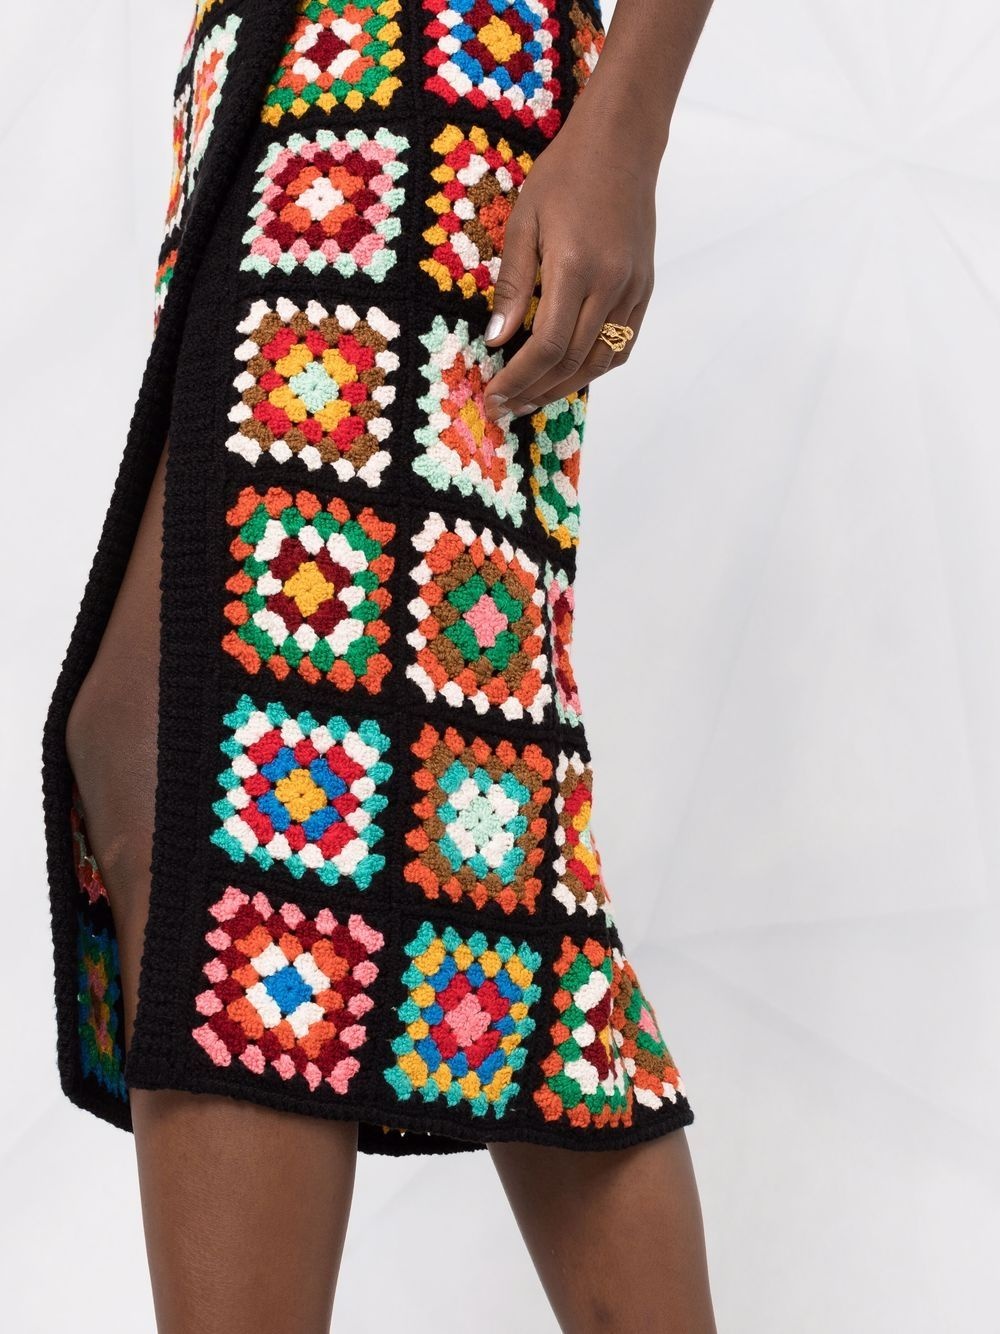 crochet-design skirt - 3